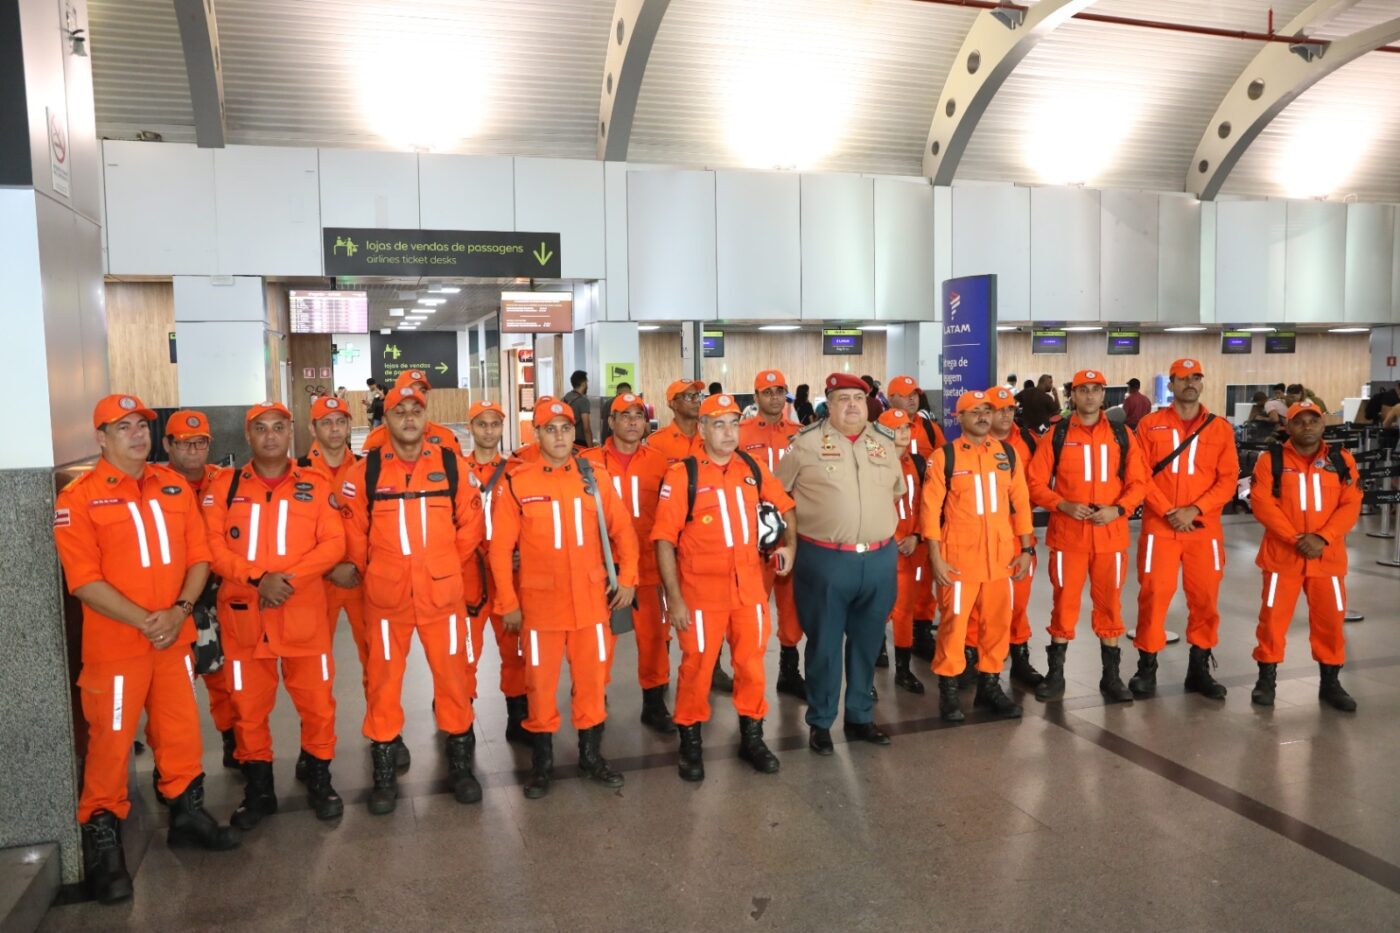 Corpo de Bombeiros da Bahia envia 22 profissionais ao Rio Grande do Sul após fortes chuvas